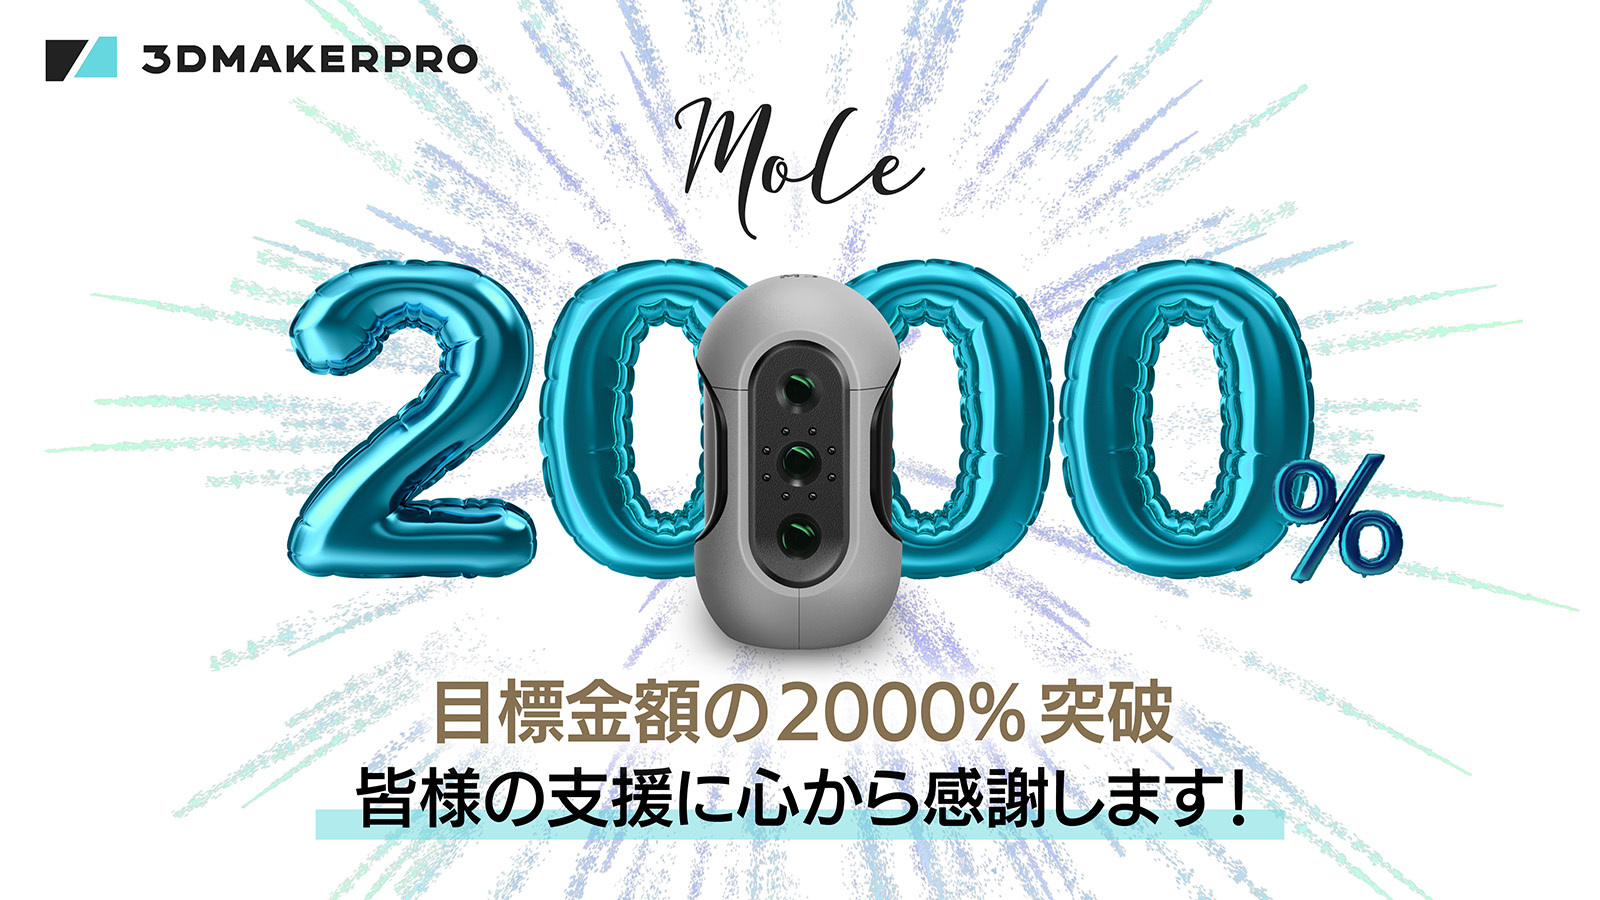 開始3日で目標金額2000%突破】3DMakerproの軽量3Dスキャナー「Mole